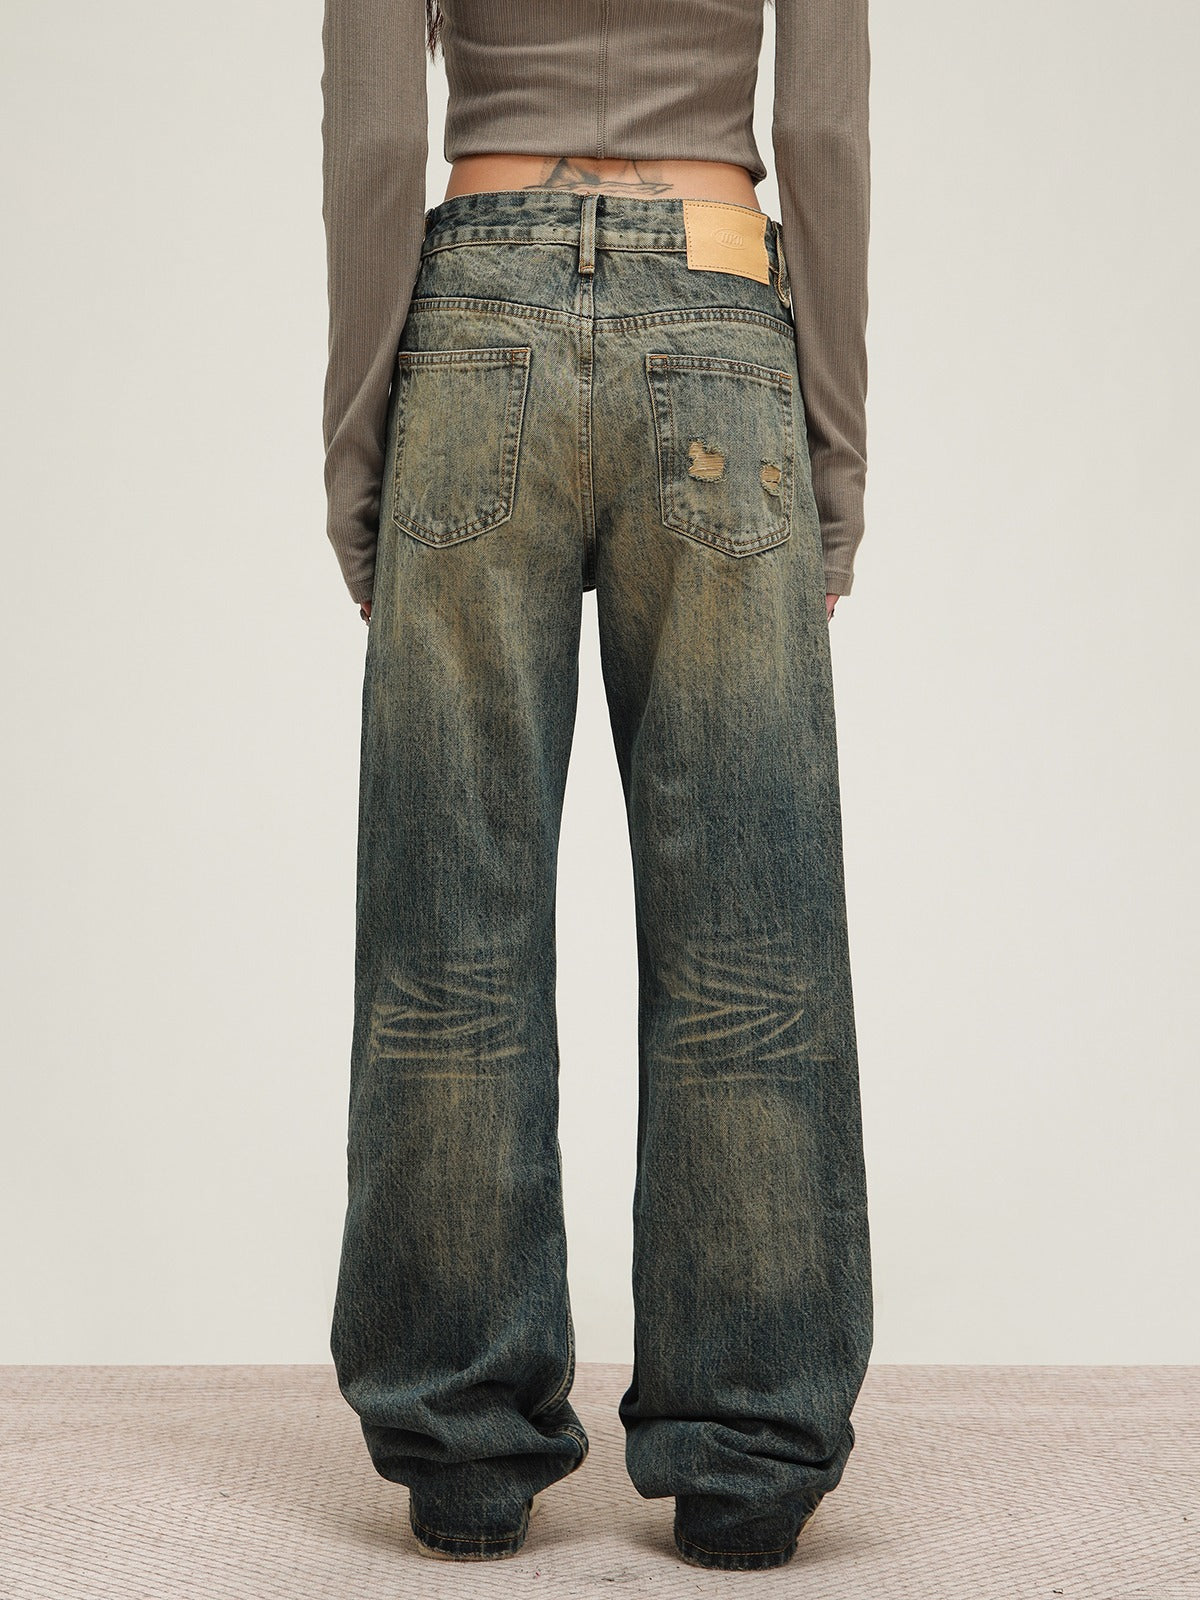 American Vintage Wash Jeans Pants